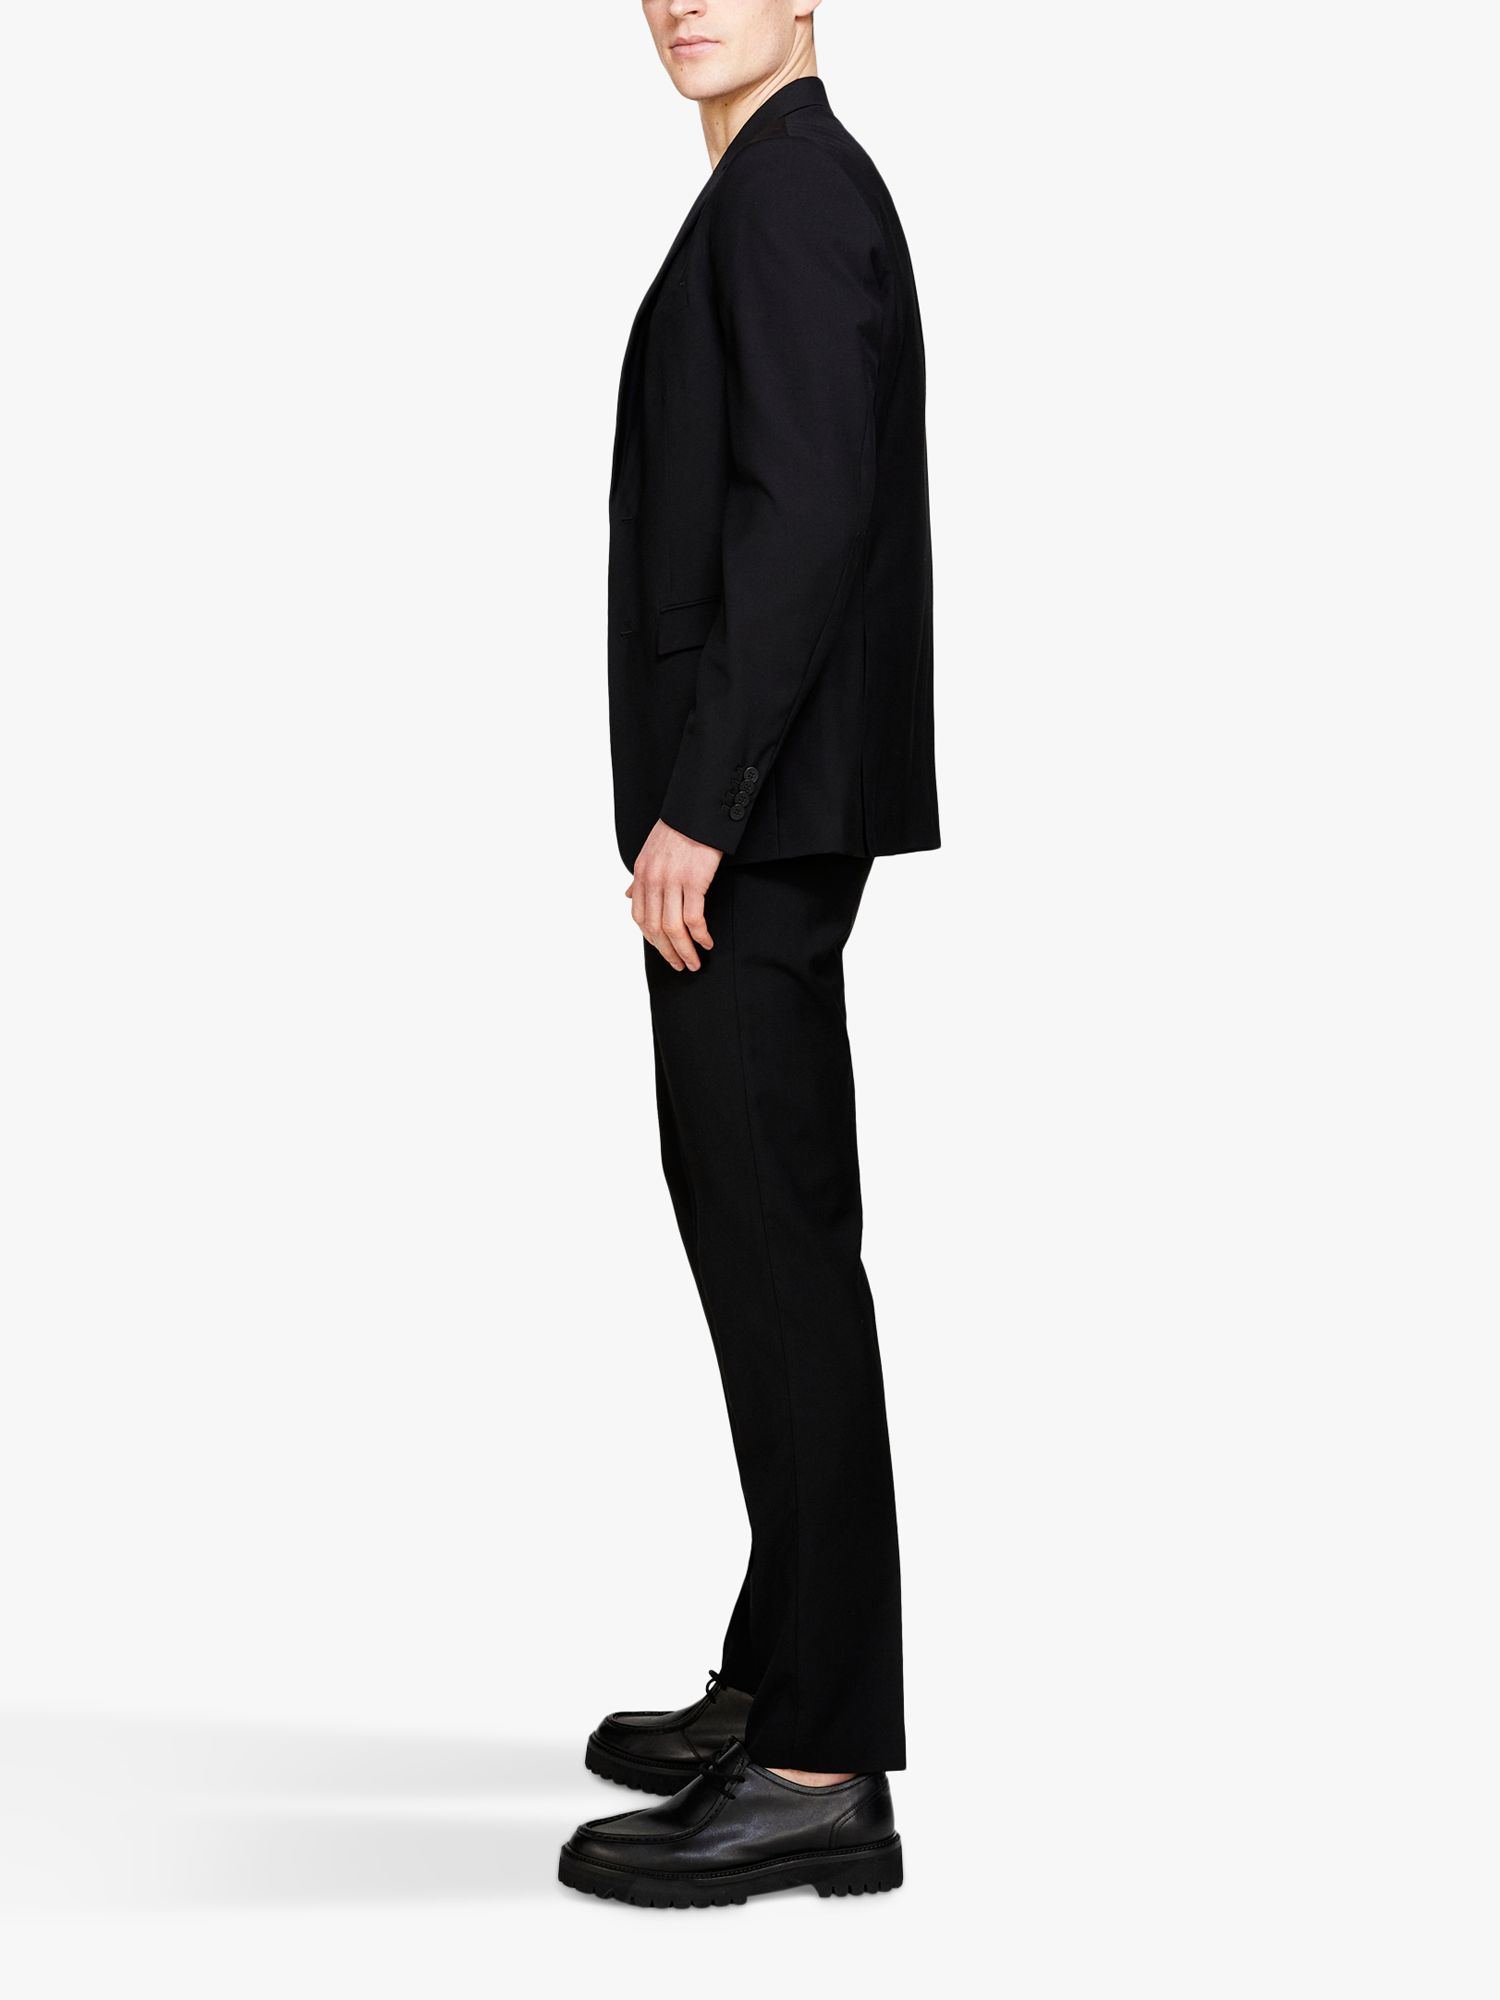 SISLEY Formal Slim Fit Trousers, Black, 30